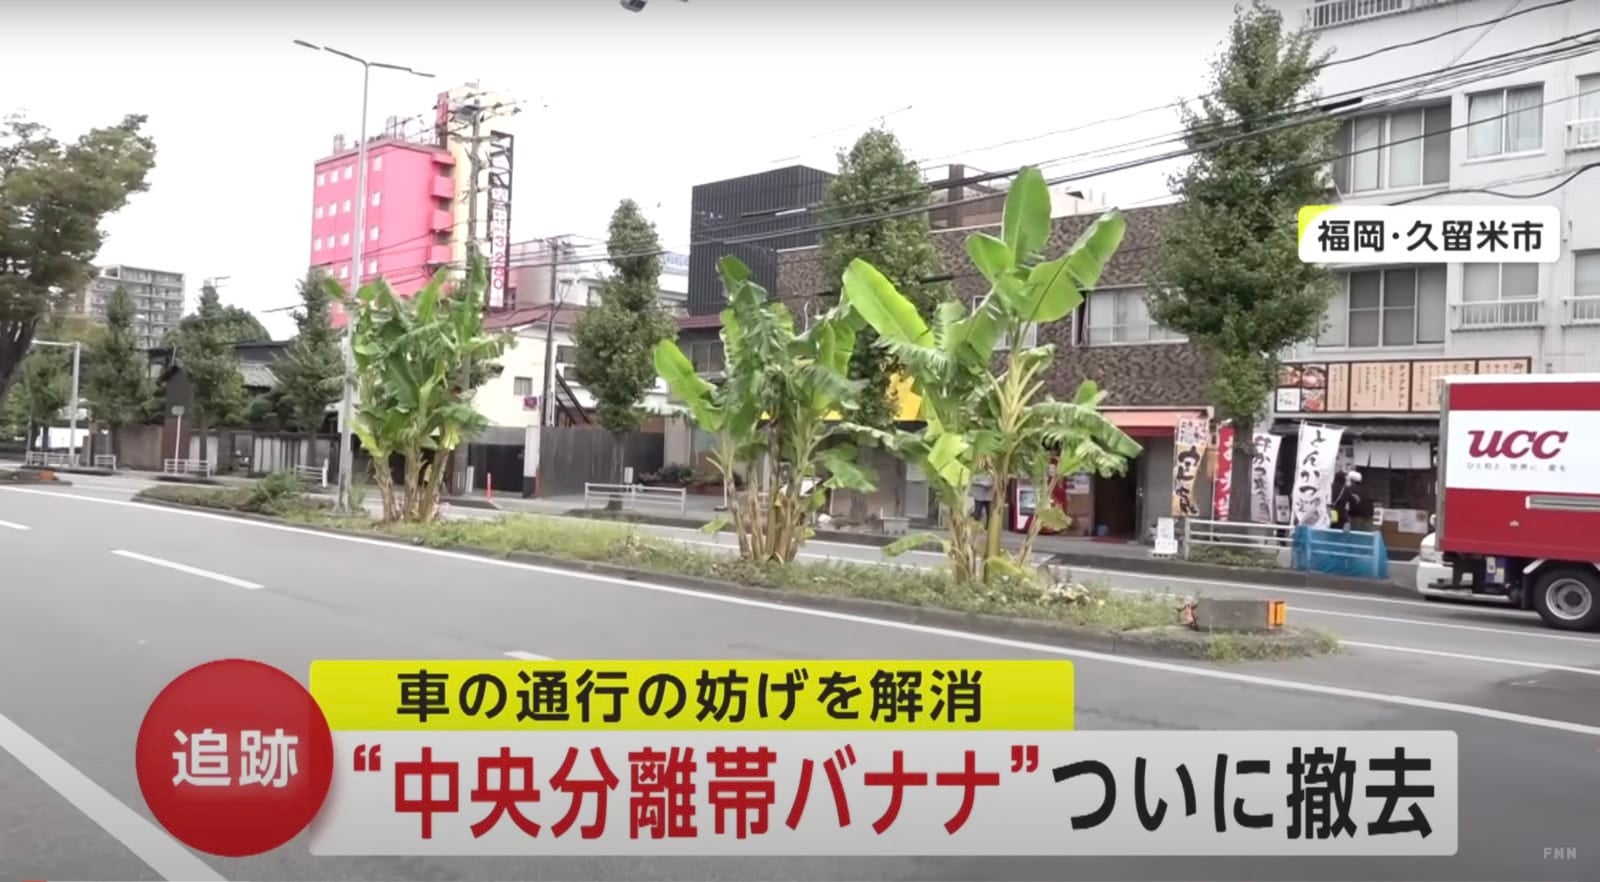 ชายชาวญี่ปุ่นแอบปลูกกล้วยบนเกาะกลางถนนนานกว่า 2 ปี ก่อนถูกสั่งให้ถอนออกเพราะตำรวจเพิ่งรู้